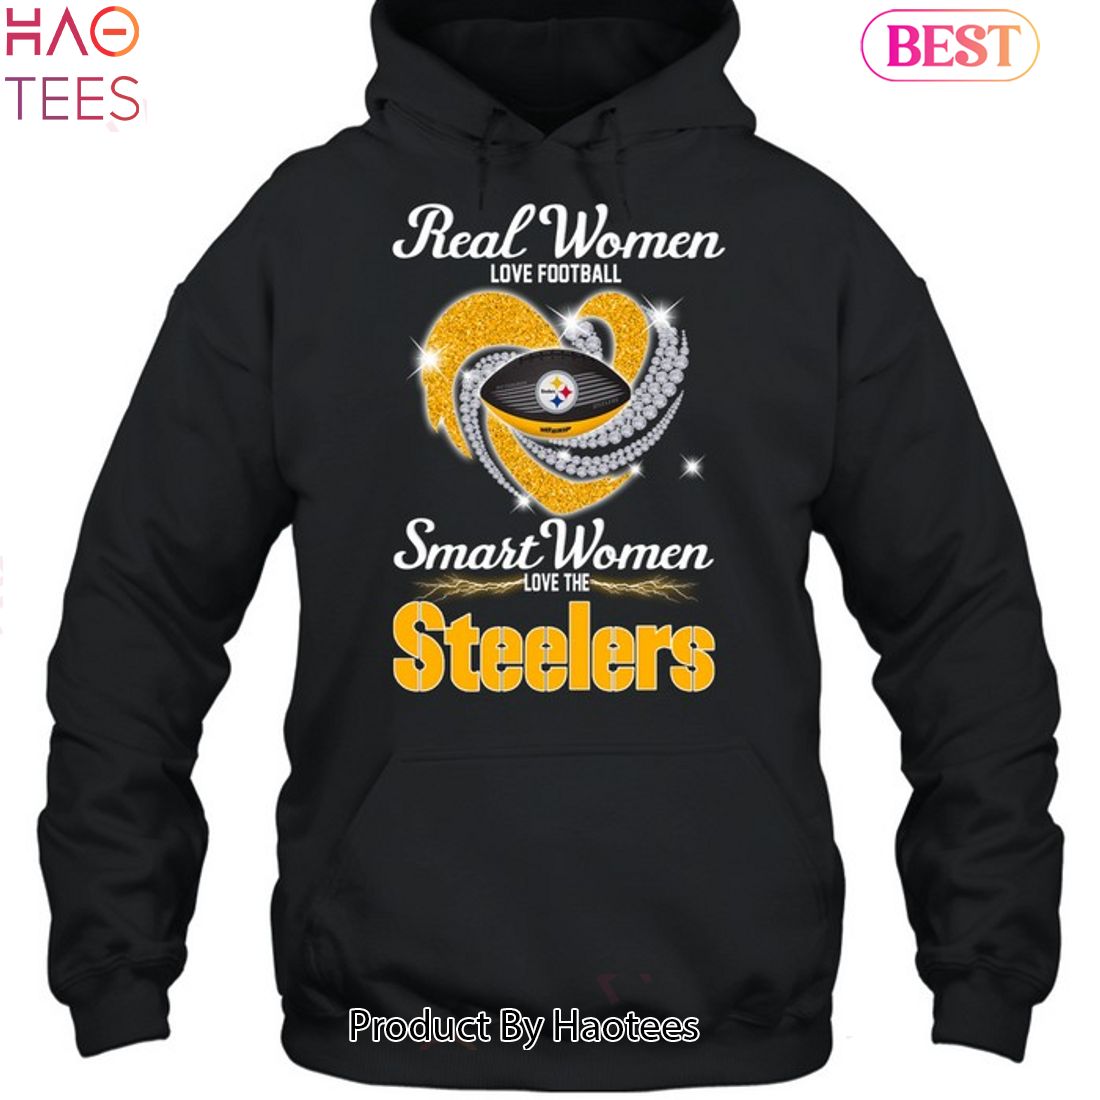 pittsburgh steelers hoodie women